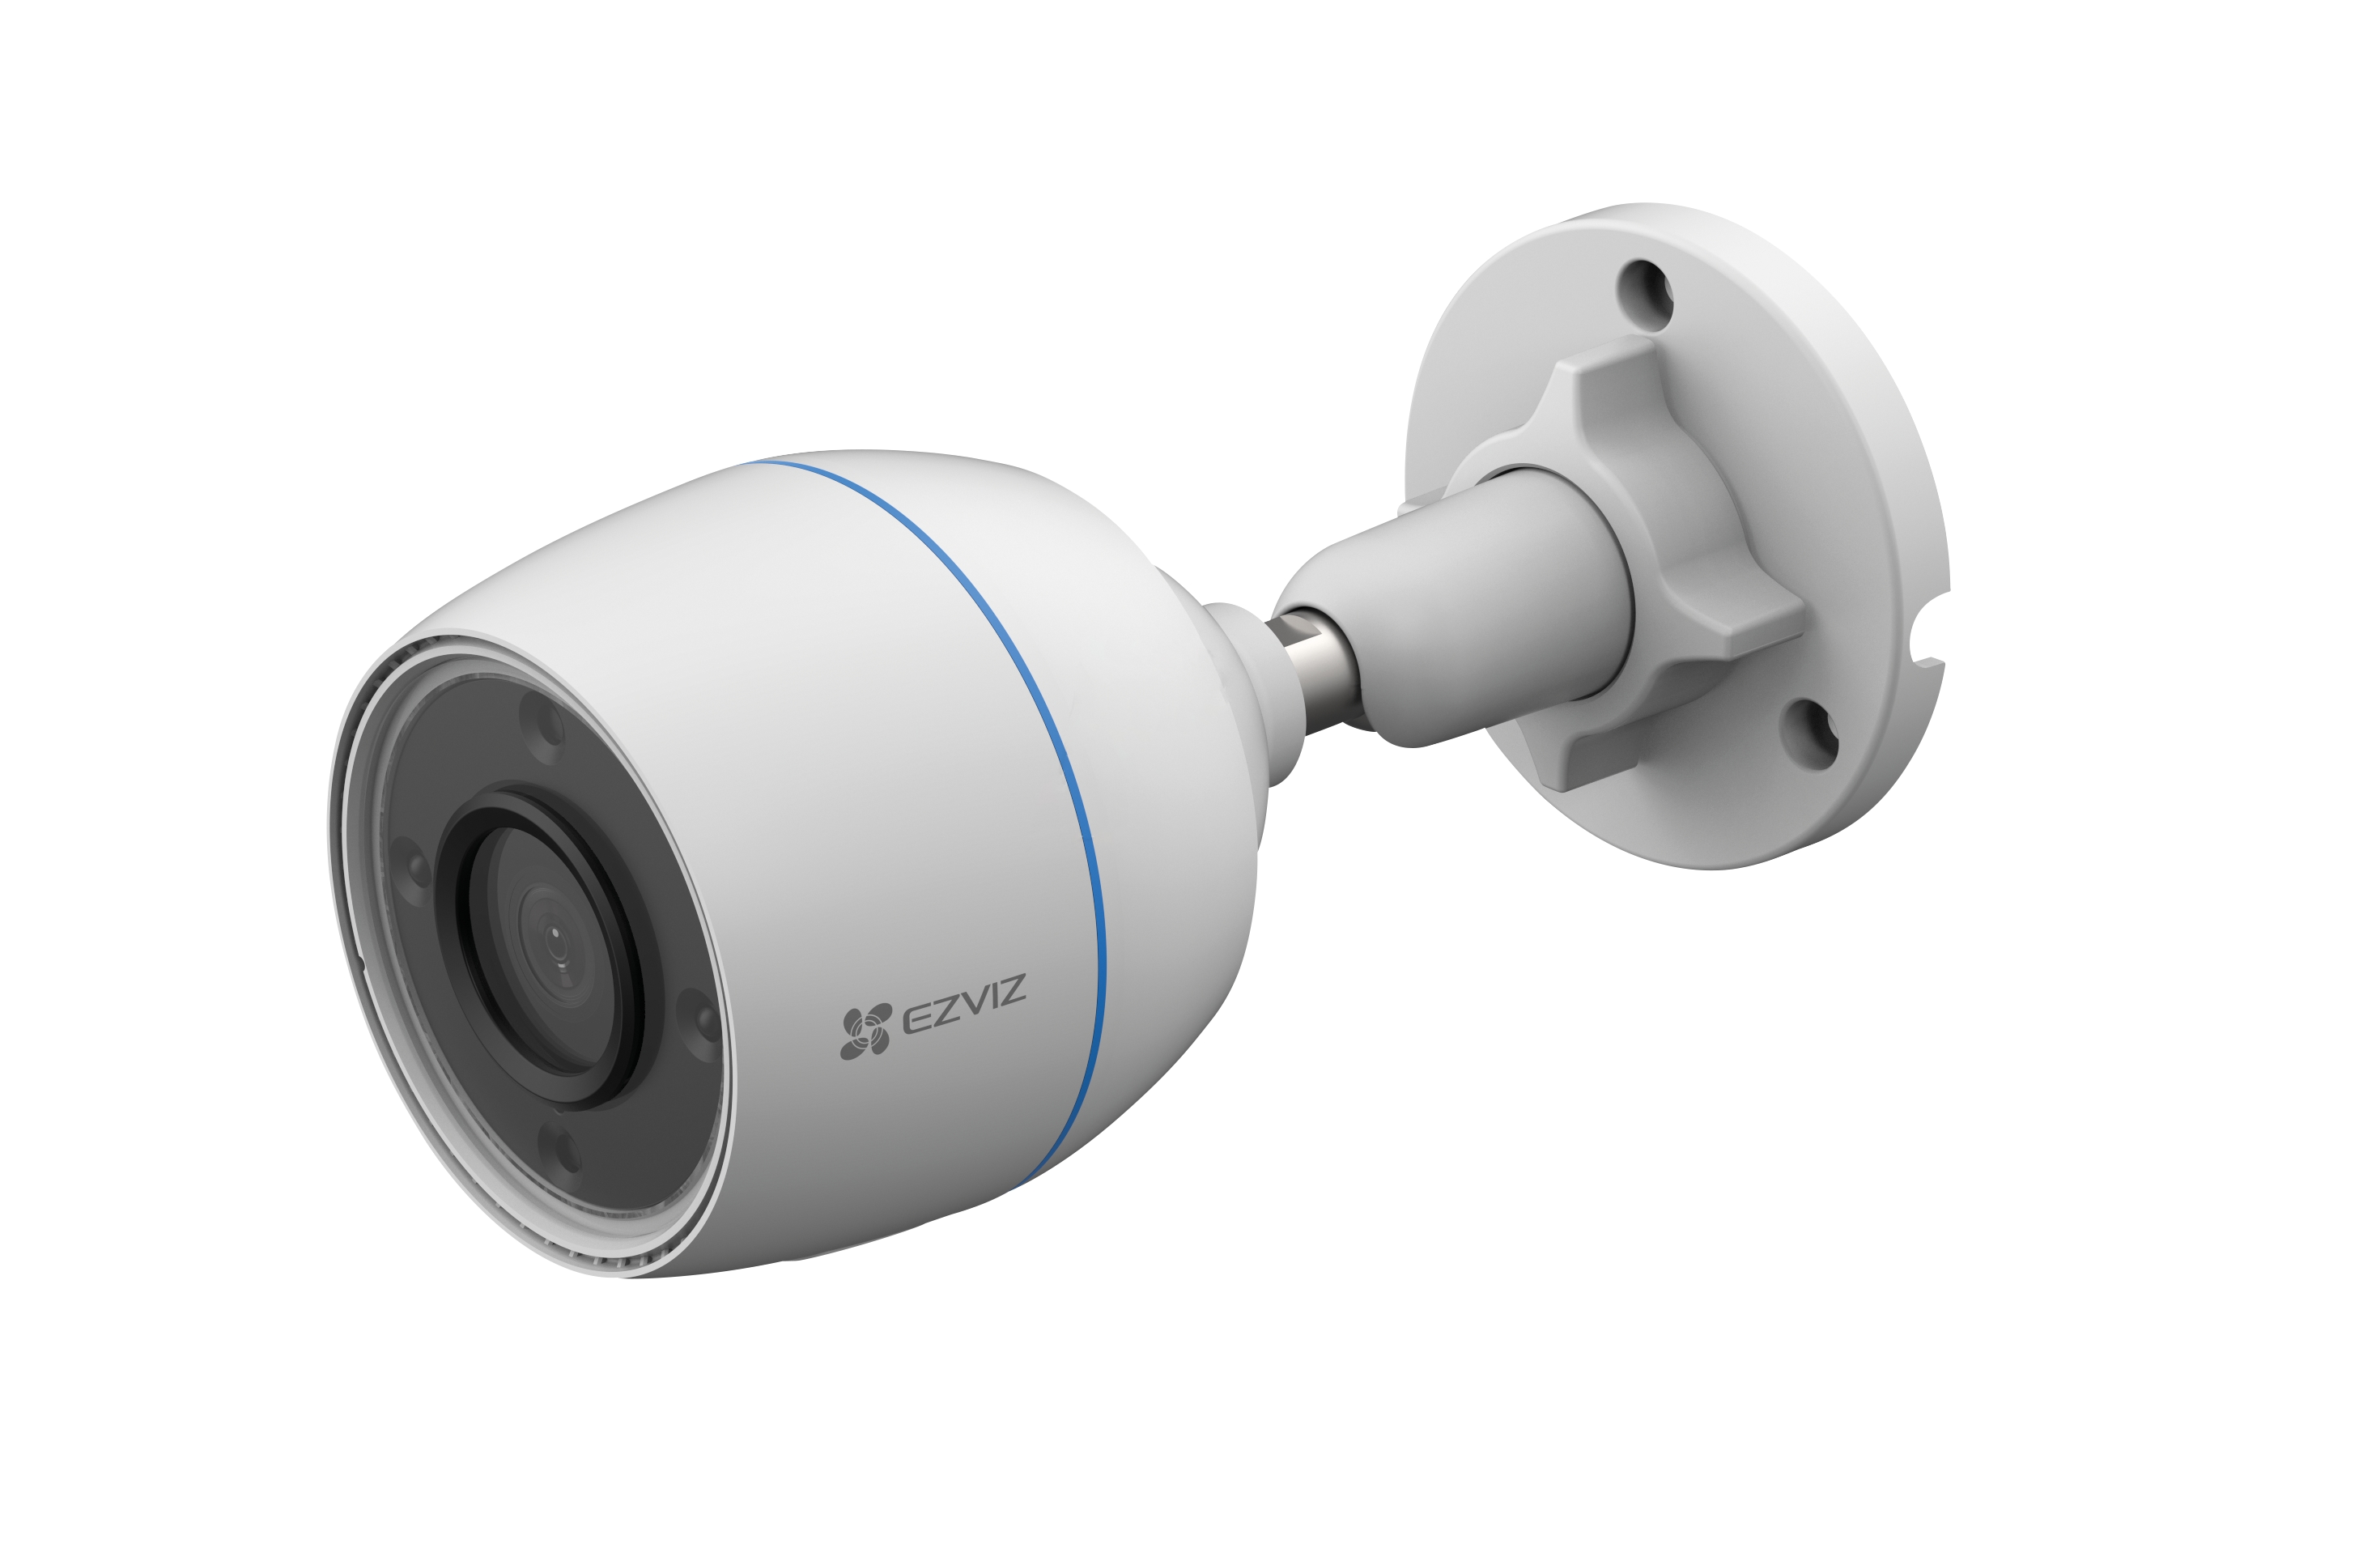 Ezviz регистратор. Камера видеонаблюдения уличная модель EZVIS CS- h8 5mp (6mm). CS-h3 (5mp,2.8mm). EZVIZ CS-h3c. EZVIZ CS-h4 (3wkfl, 2.8 mm) купольная Wi-Fi камера 3 МП.